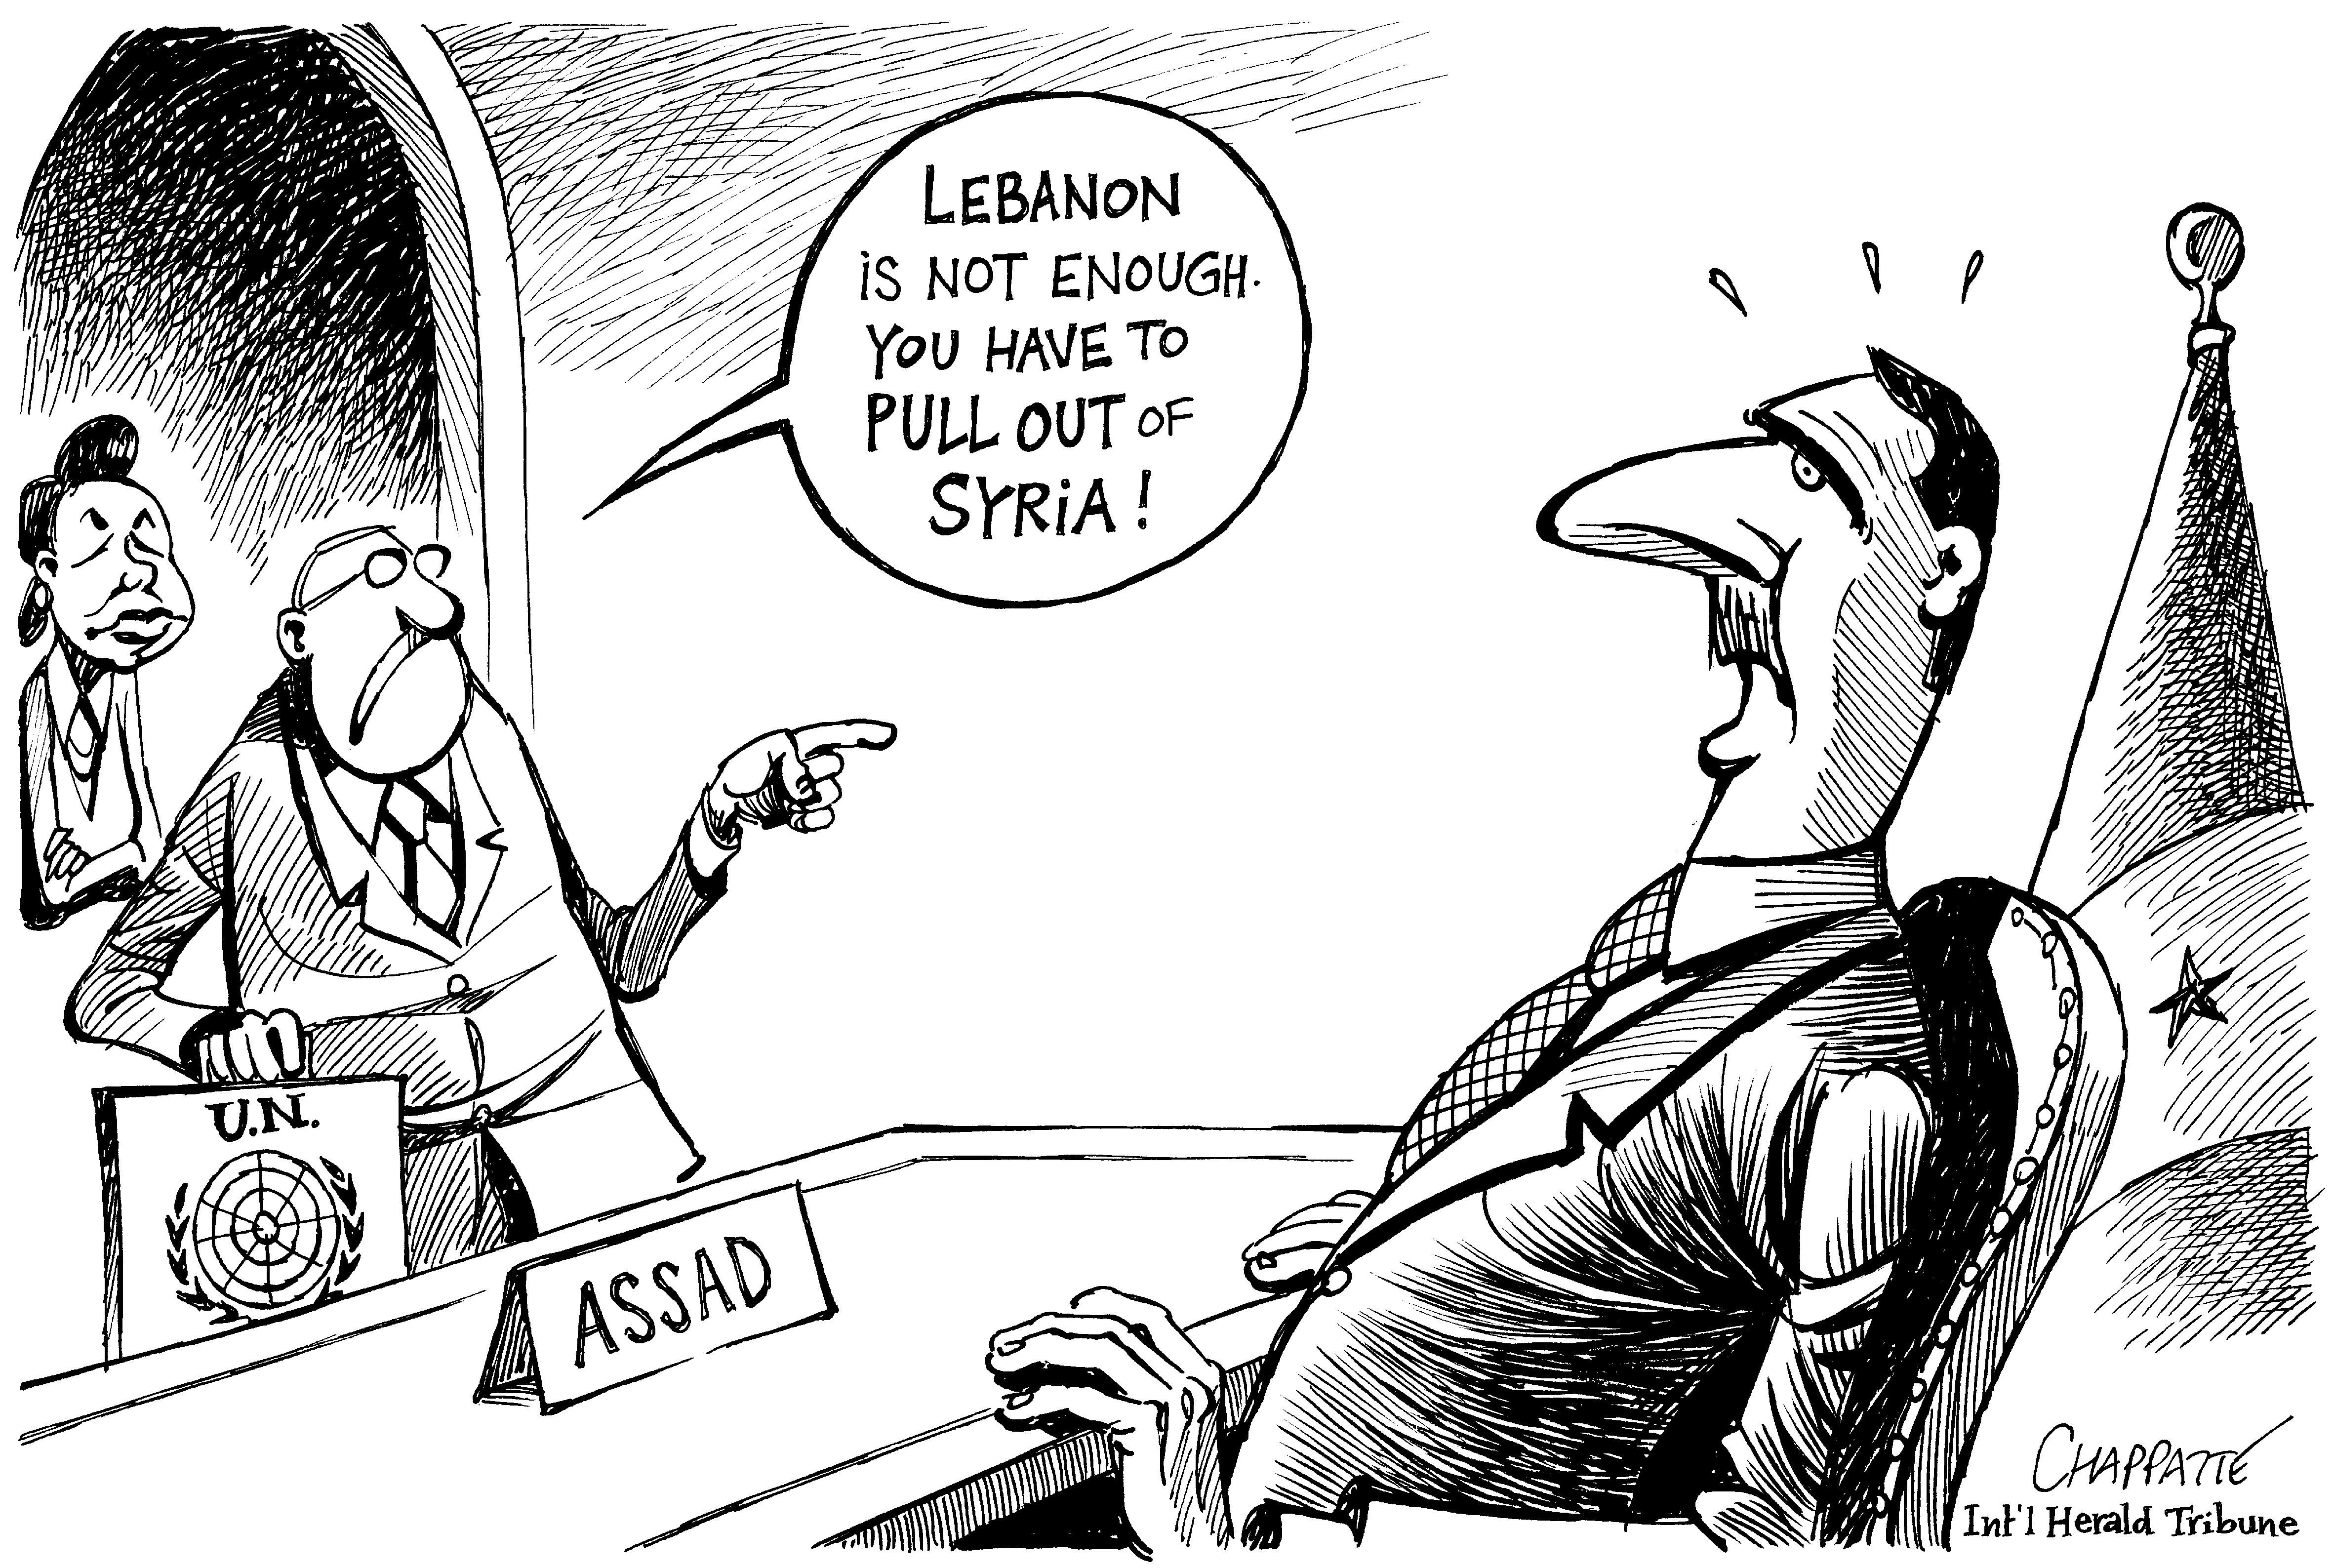 Syria under pressure